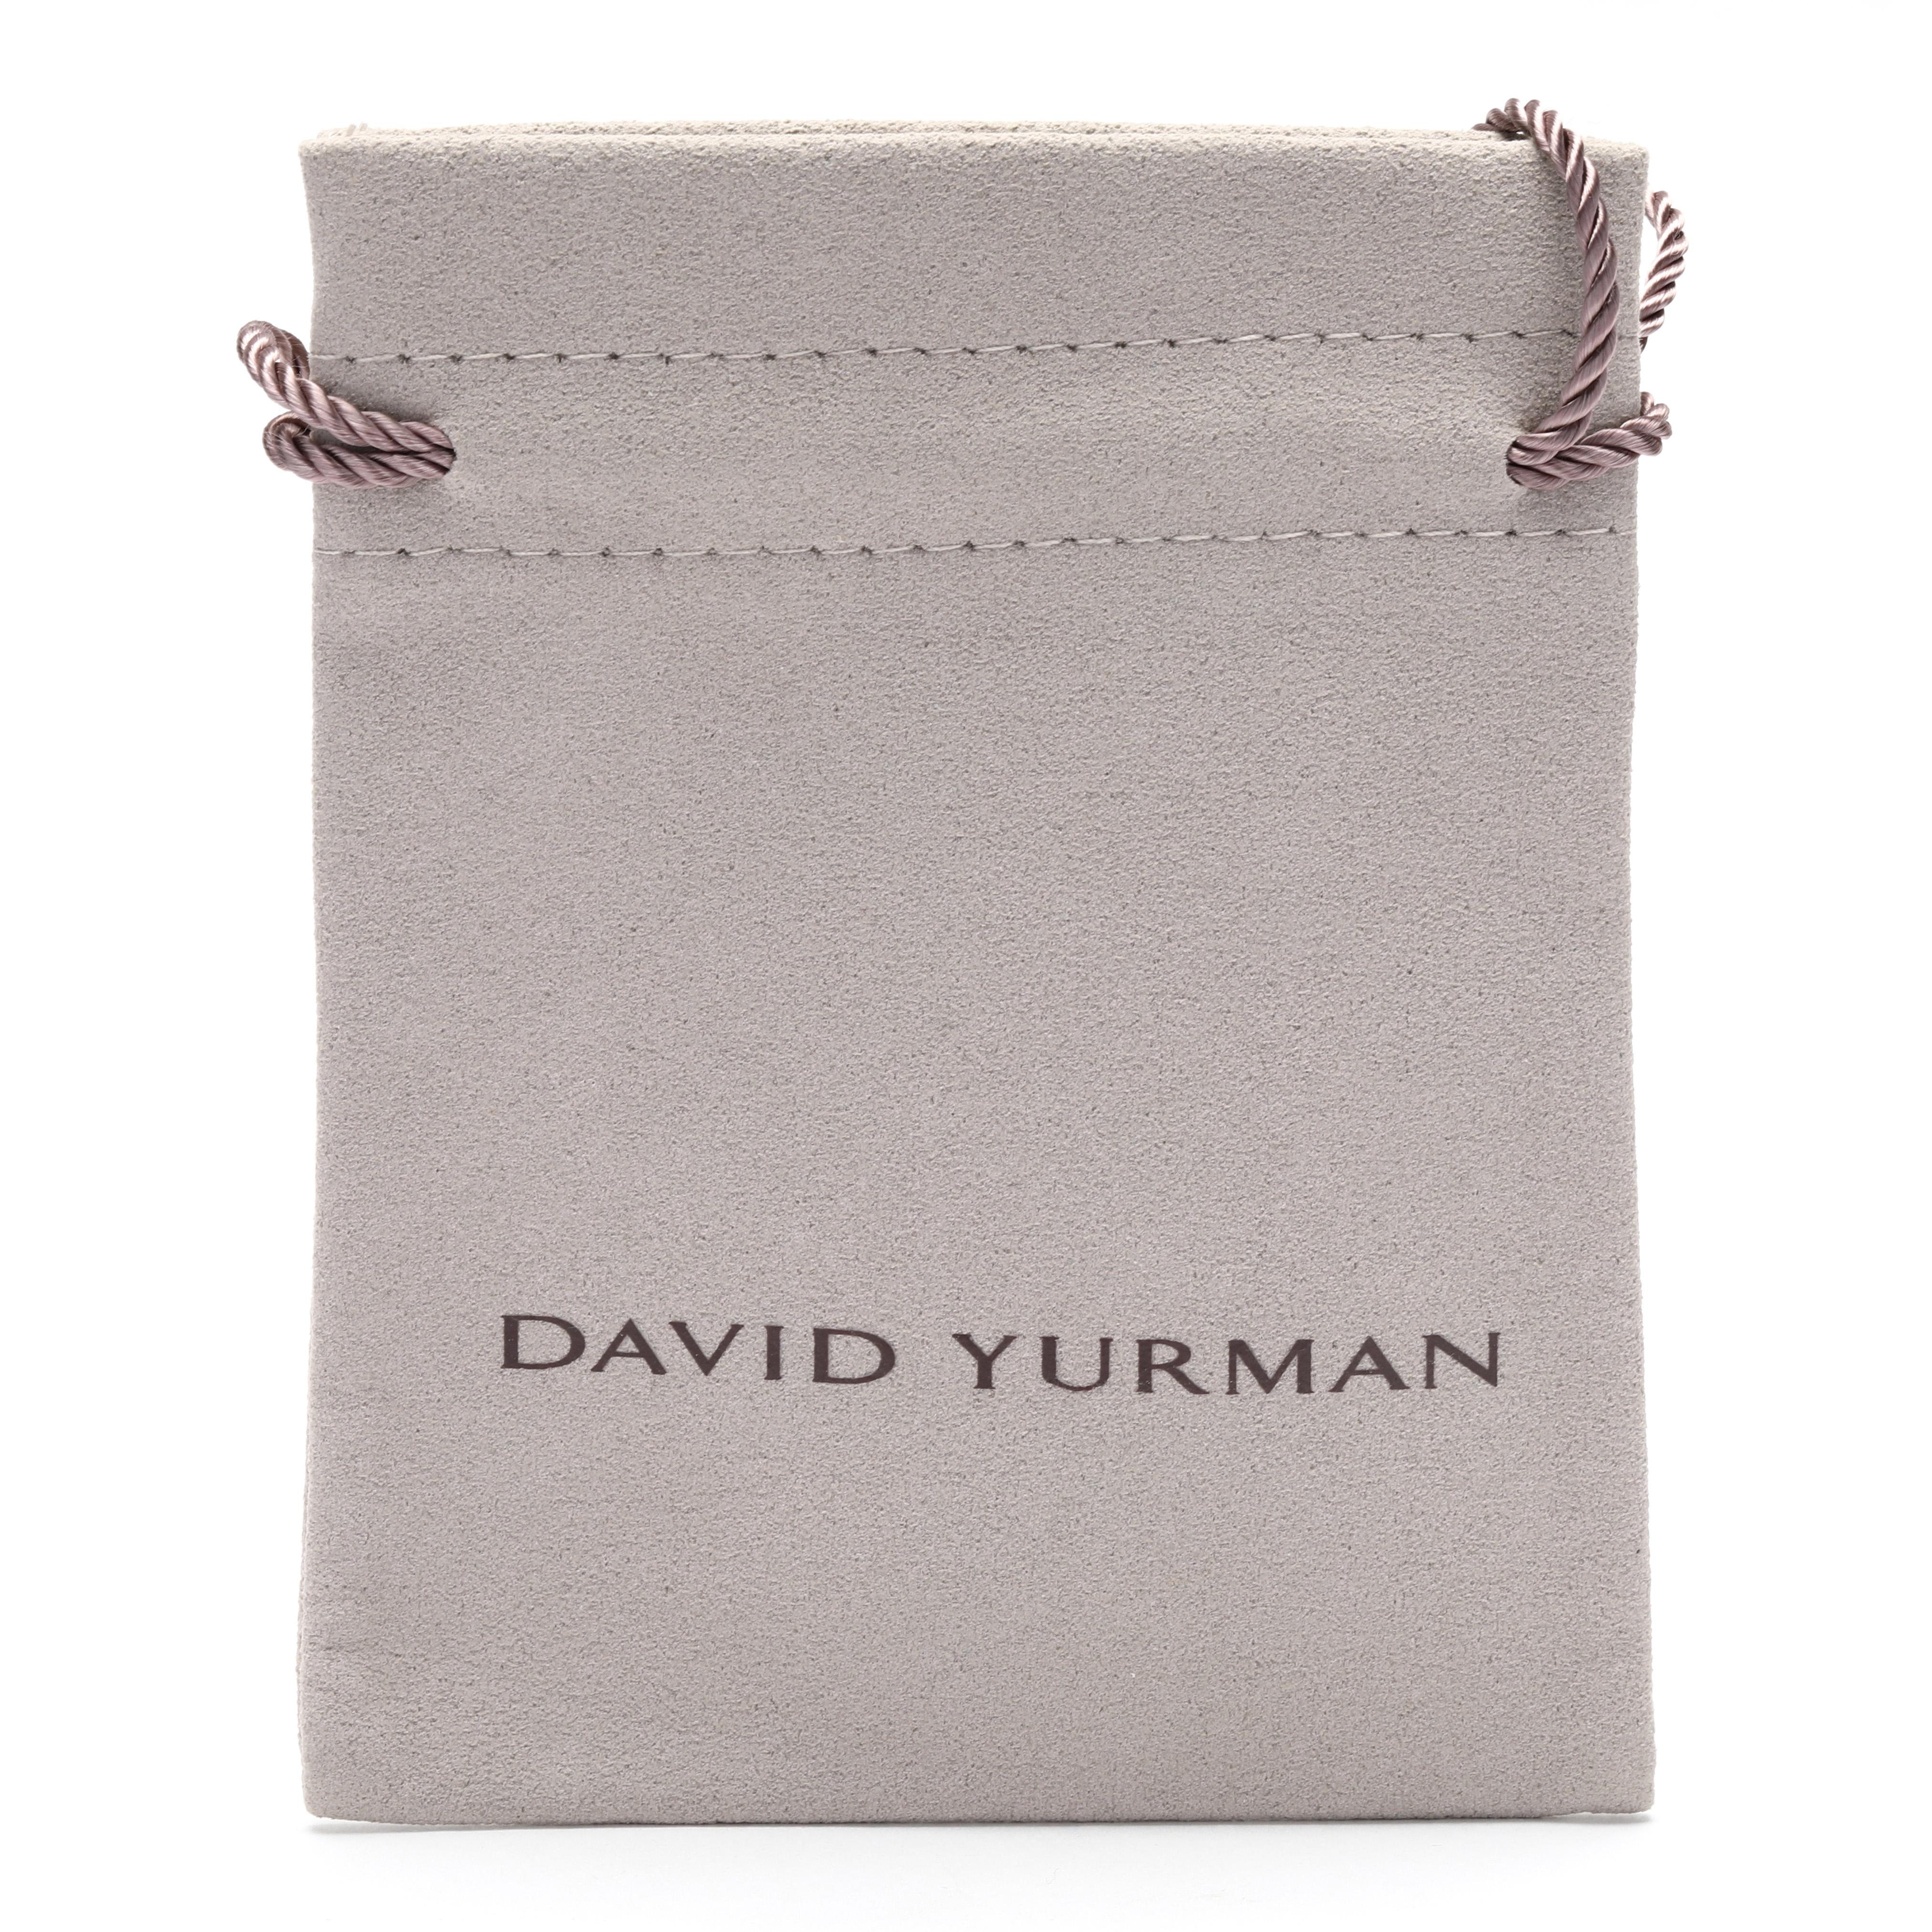 david yurman purse